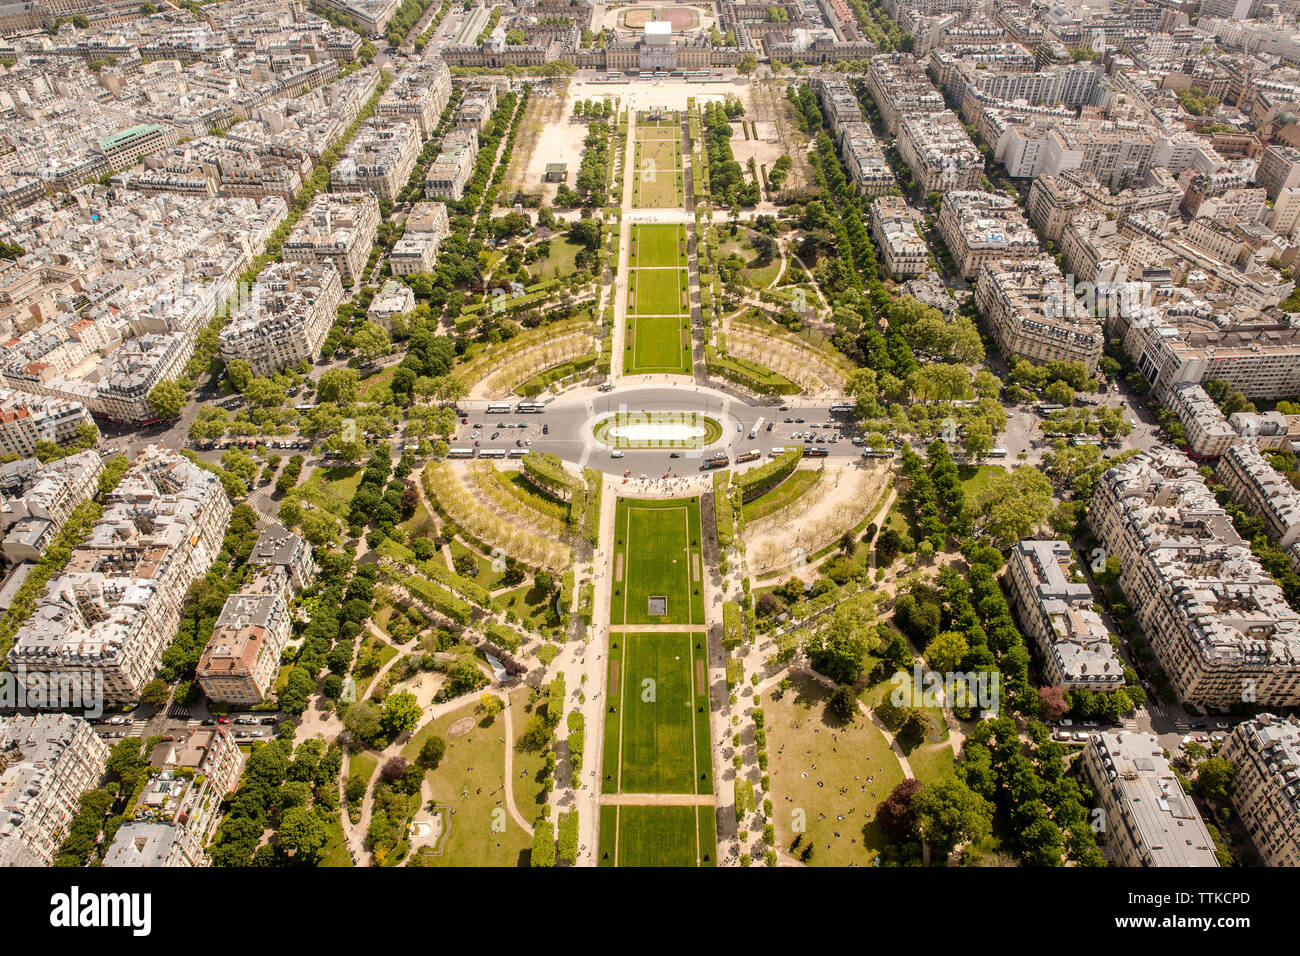 Vue aérienne du parc en ville pendant les jours ensoleillés Banque D'Images